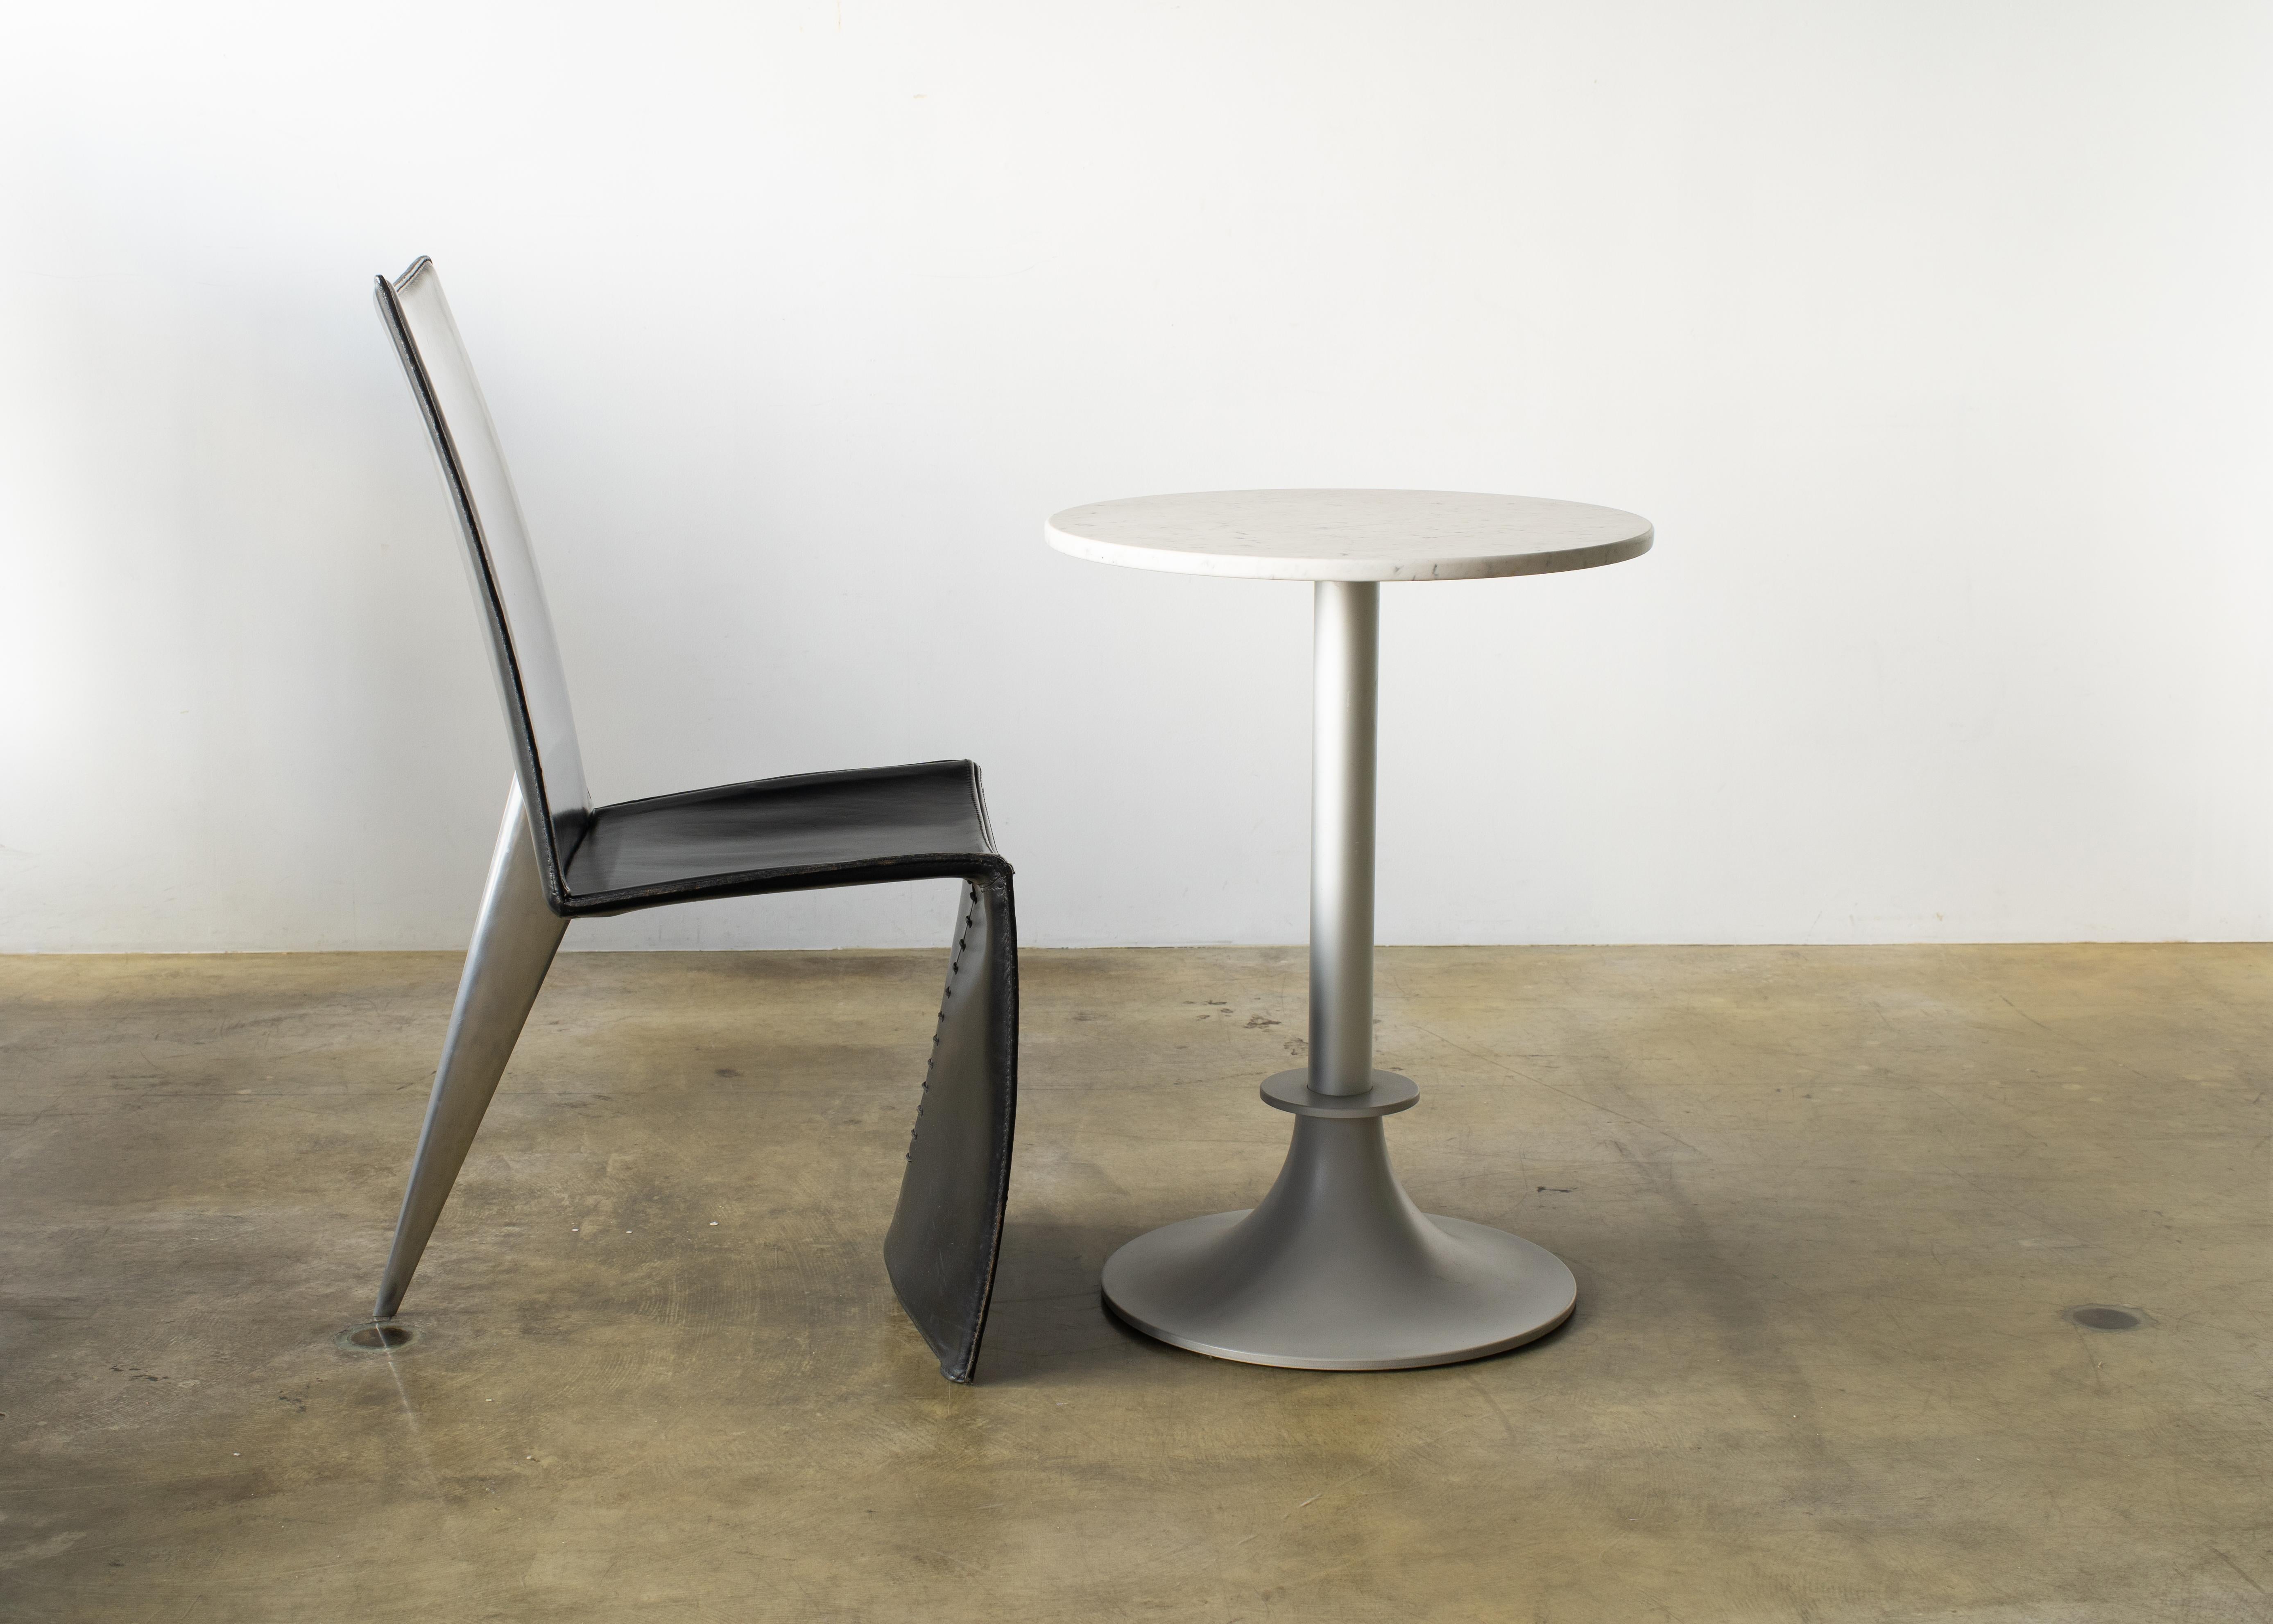 Lord Yi Tisch, entworfen von Philippe Starck für Driade.
Platte aus weißem Marmor und Bein aus Aluminium.
 